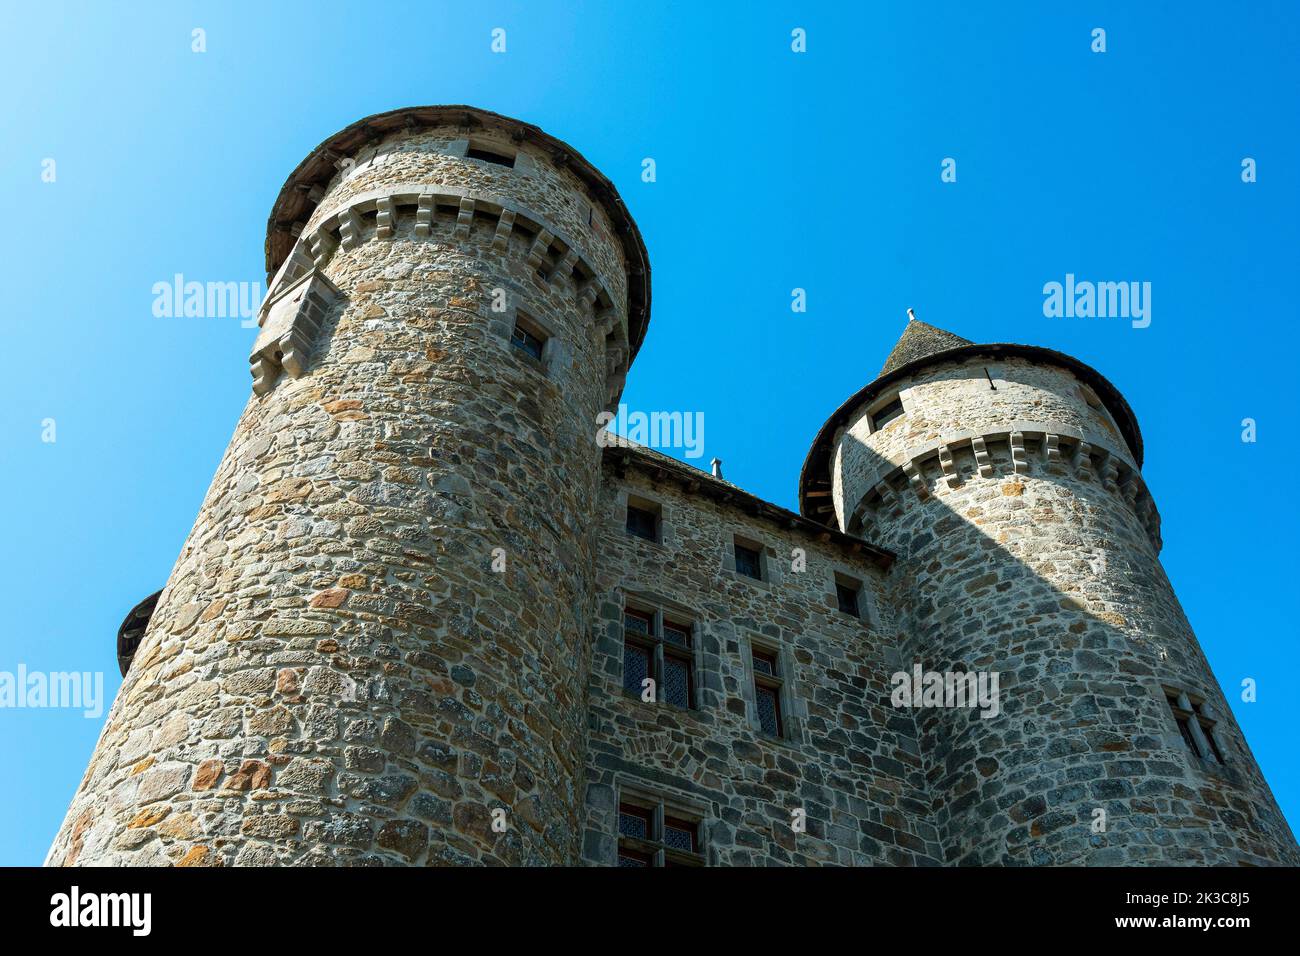 Lanobre. Das Chateau de Val aus dem 13.. Jahrhundert ist Eigentum der Stadt Bort les Orgues.Cantal. Auvergne Rone Alpes. Frankreich Stockfoto